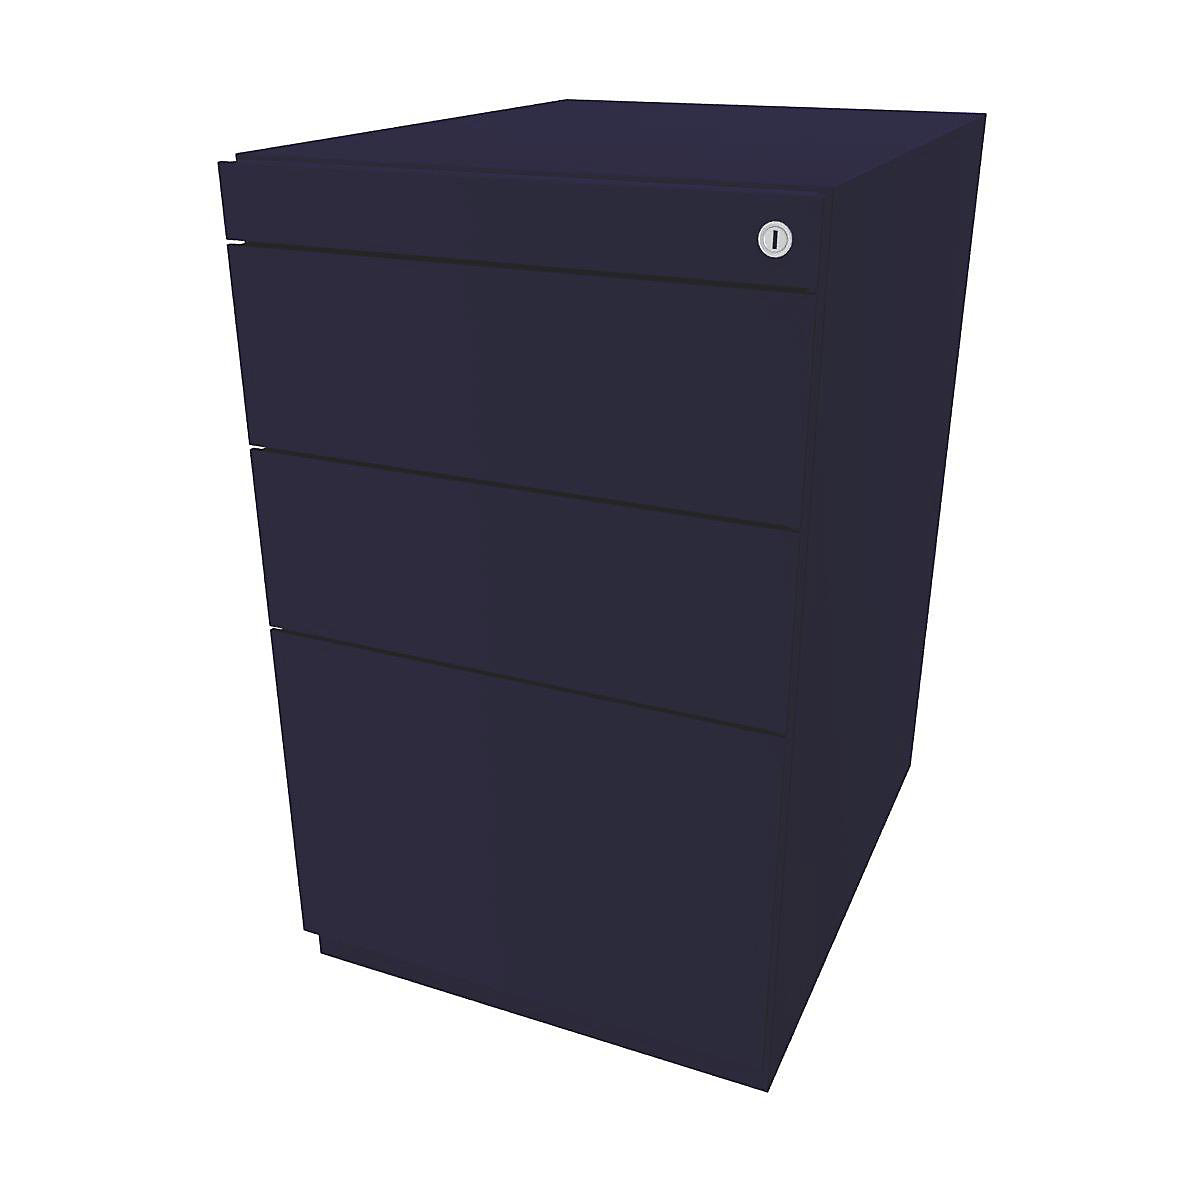 BISLEY Standcontainer Note™, mit 2 Universalschubladen, 1 Hängeregistratur, ohne Top, Tiefe 565 mm, oxfordblau